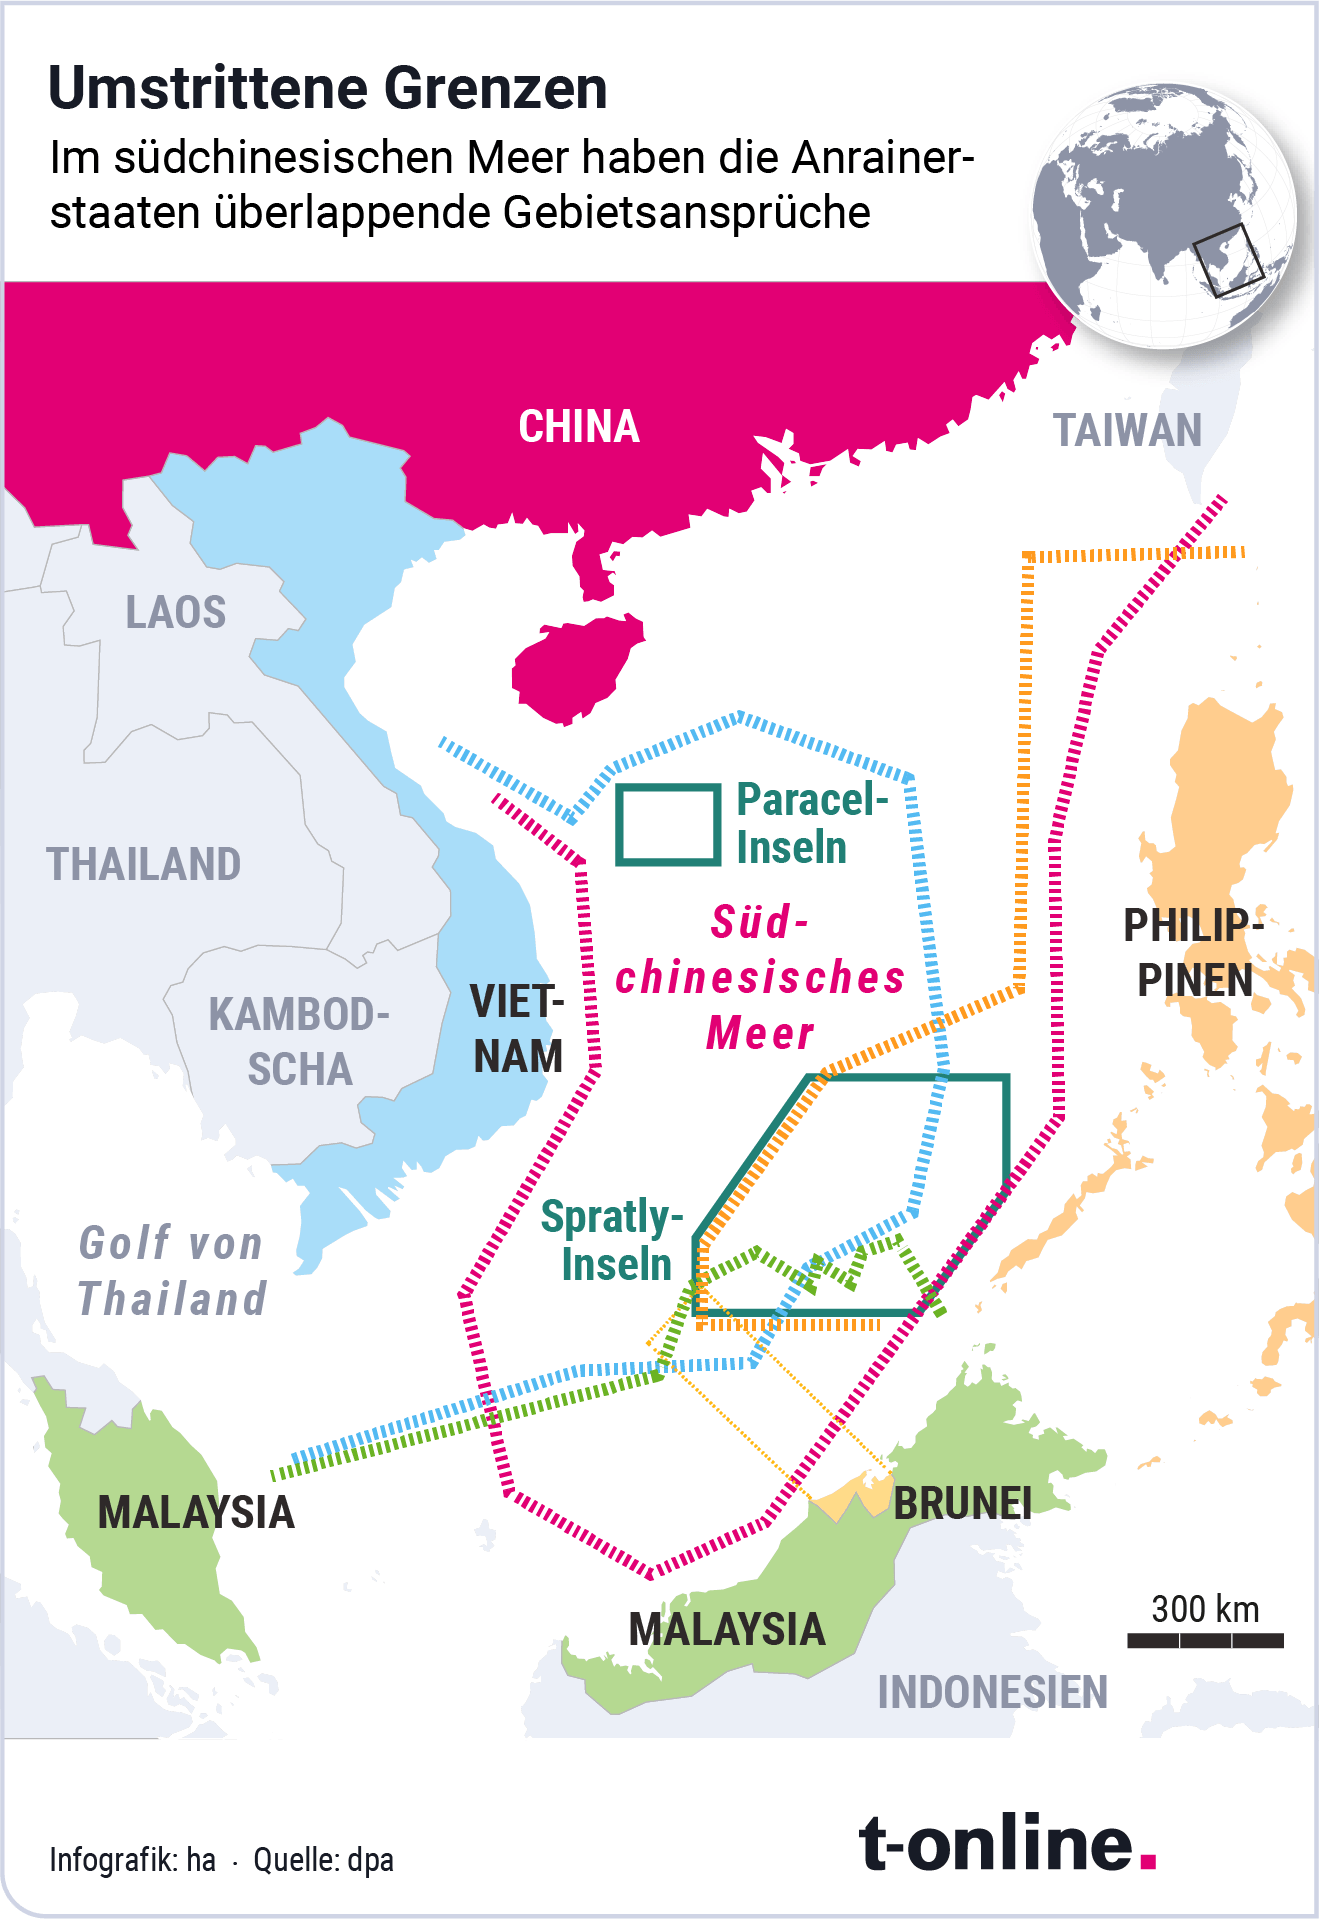 Die umstrittenen Grenzen im südchinesischen Meer.